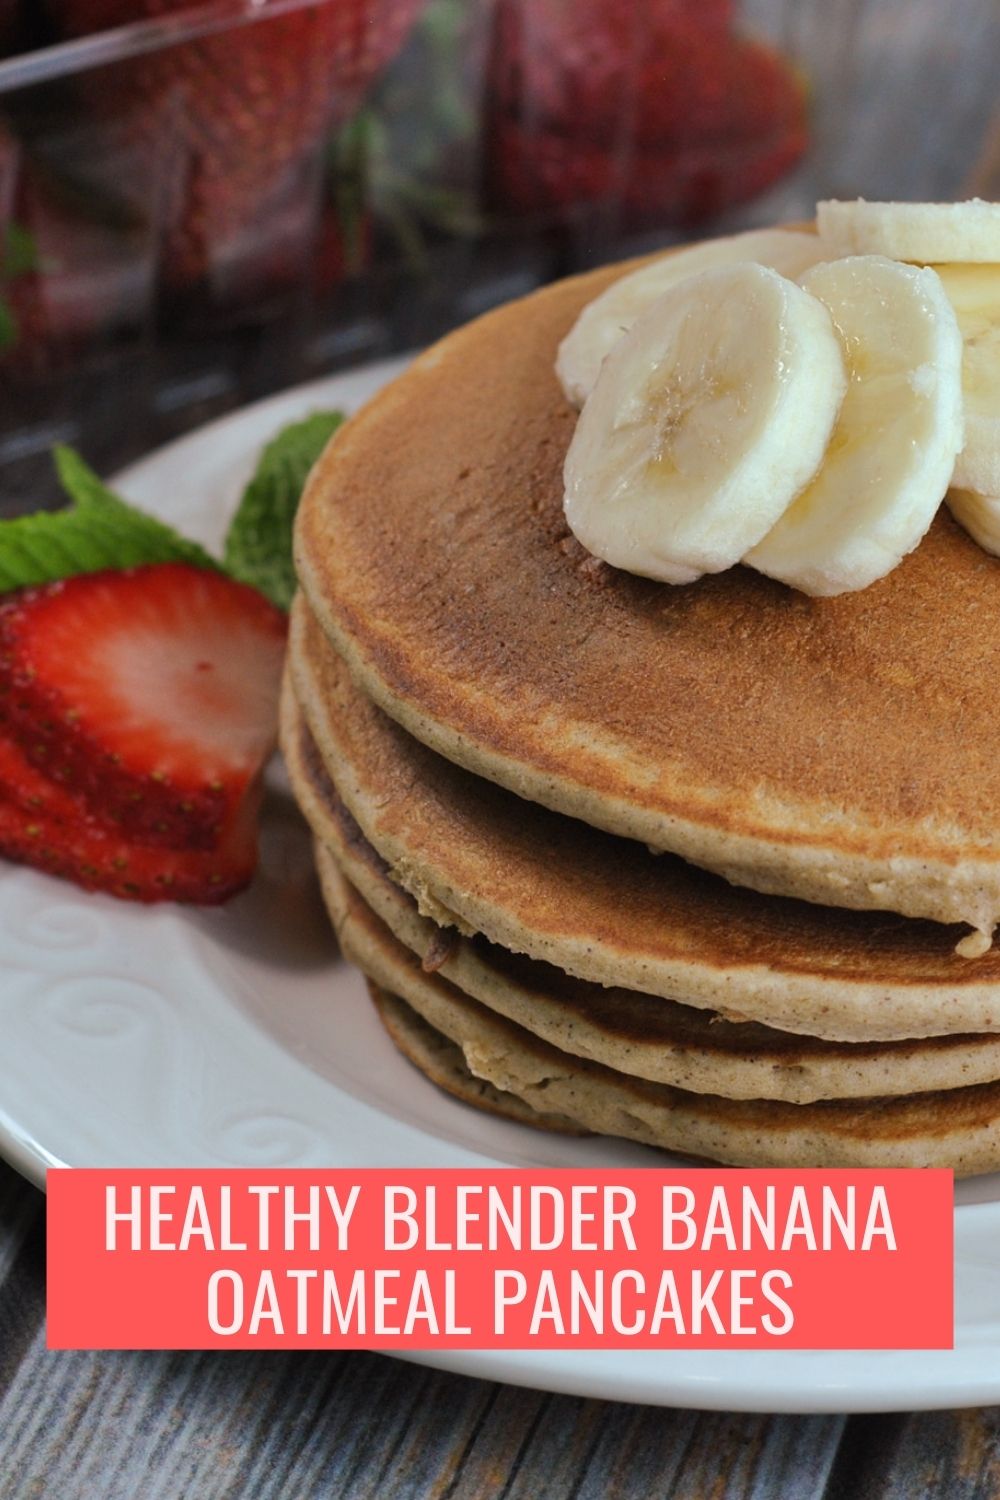 Healthy Blender Banana Oatmeal Pancakes via @preventionrd